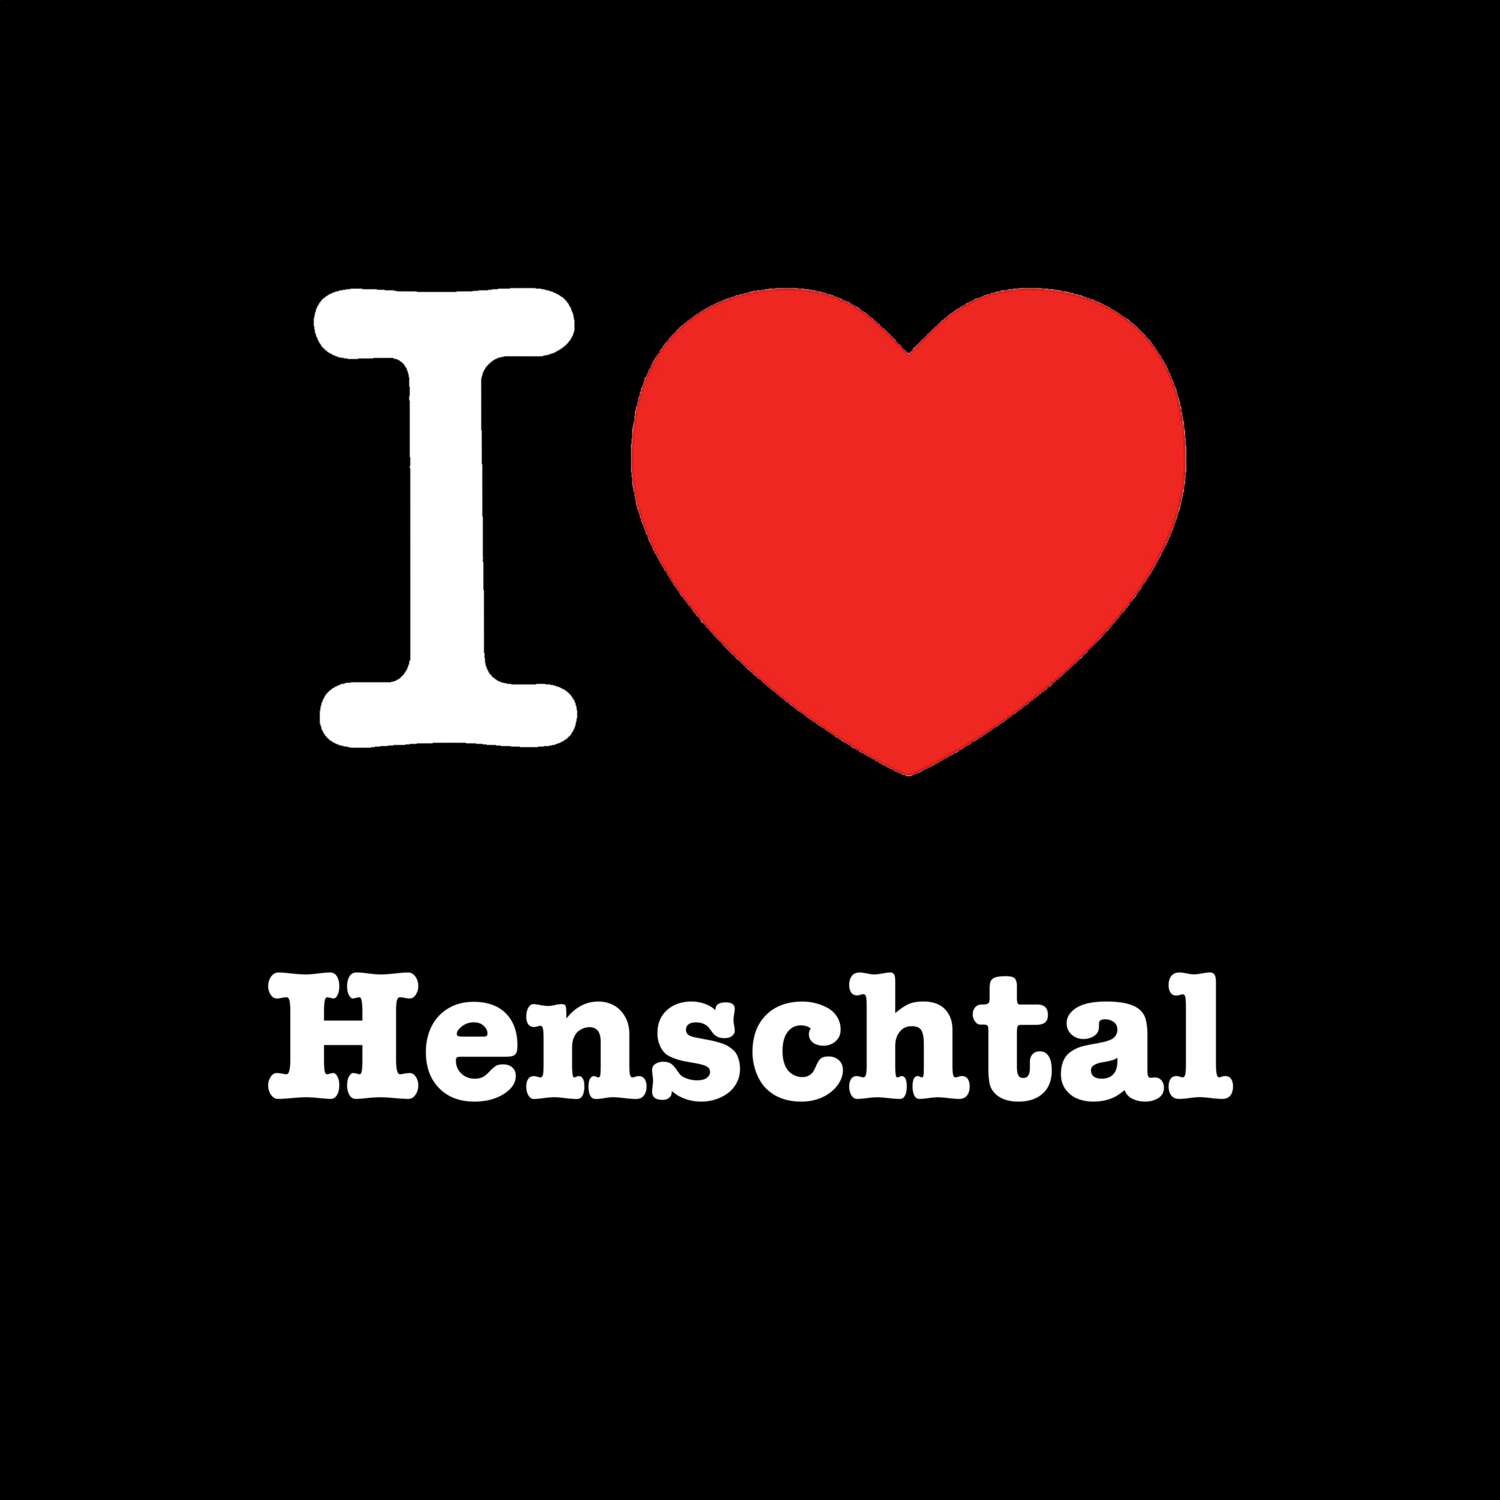 Henschtal T-Shirt »I love«